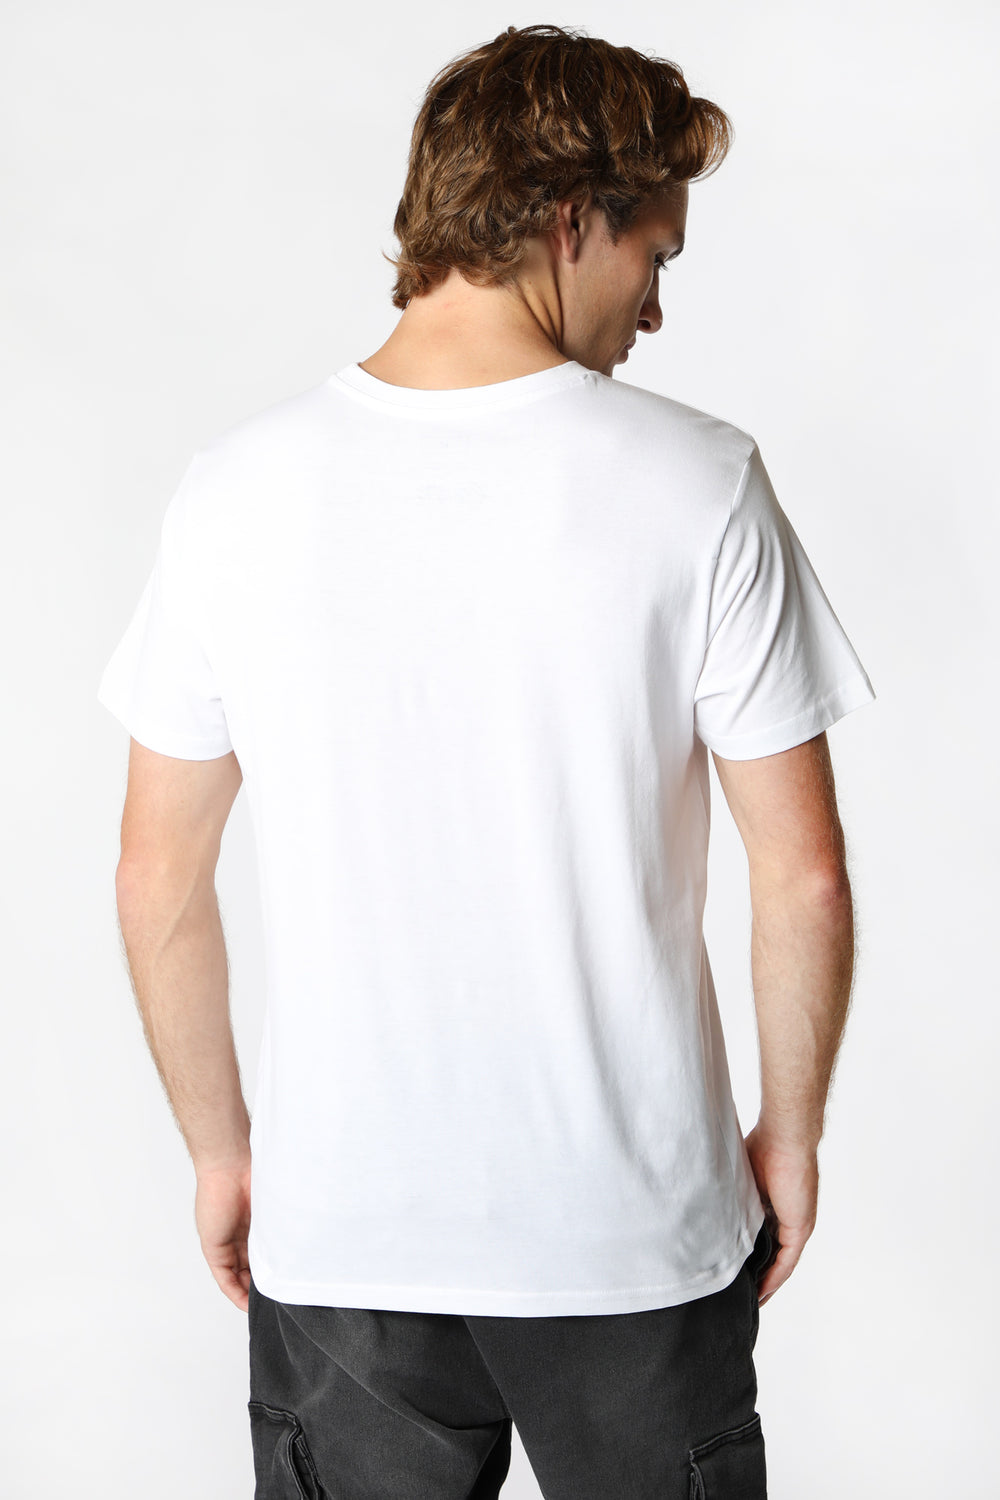 T-Shirt Imprimé Coca-Cola Homme Blanc